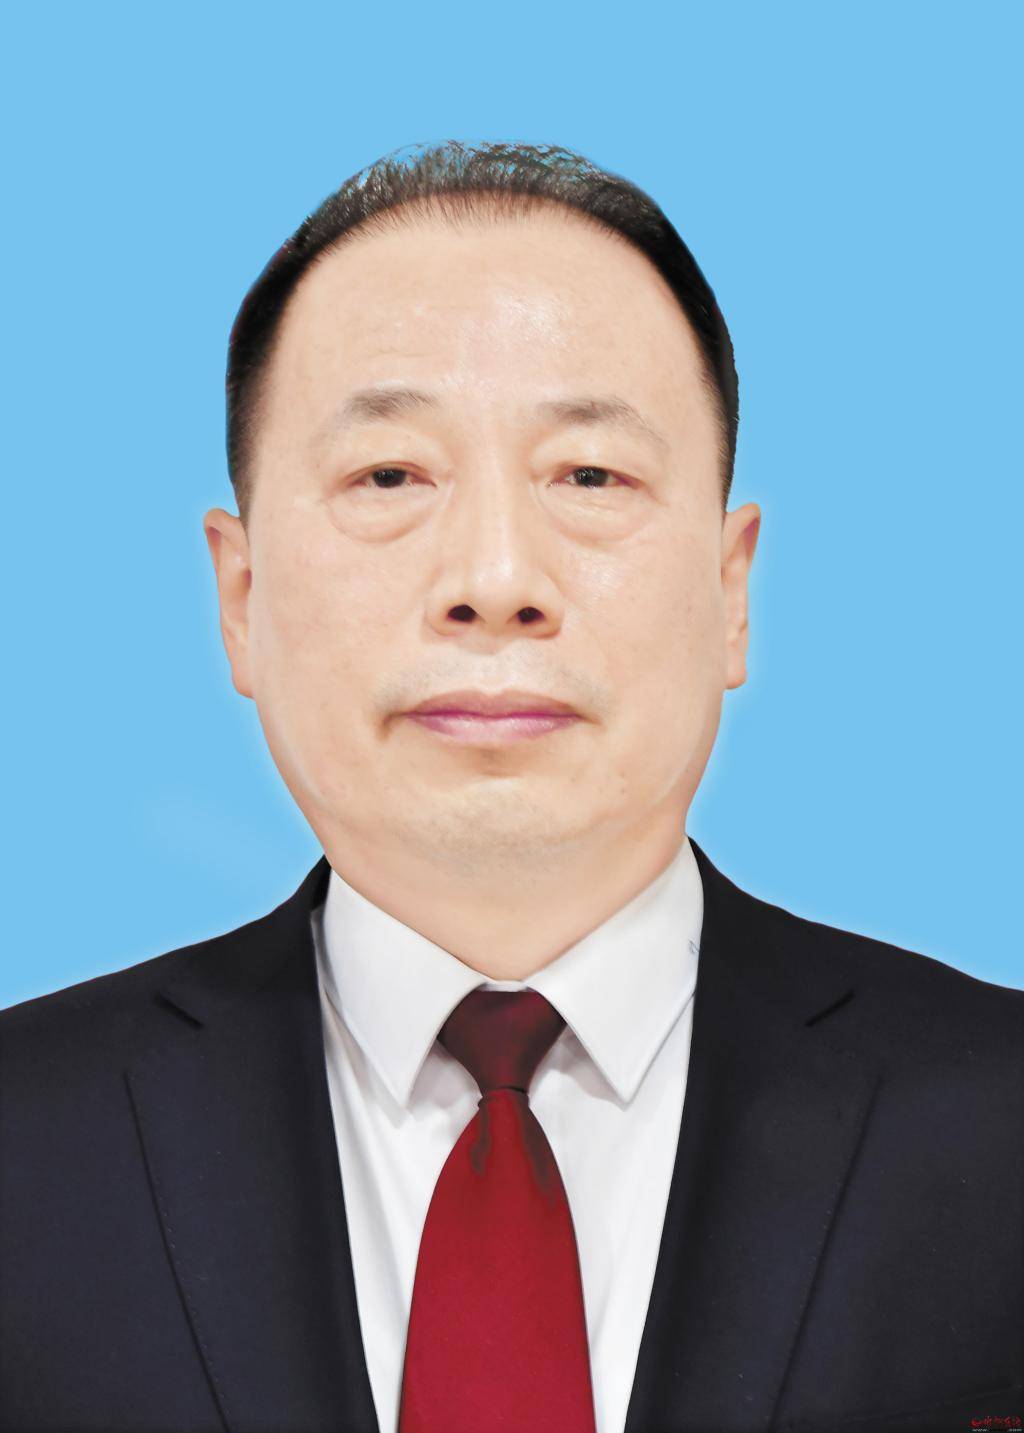 汉族,1976年1月生,大学,中共党员,现任忻州市委常委,市政府党组副书记